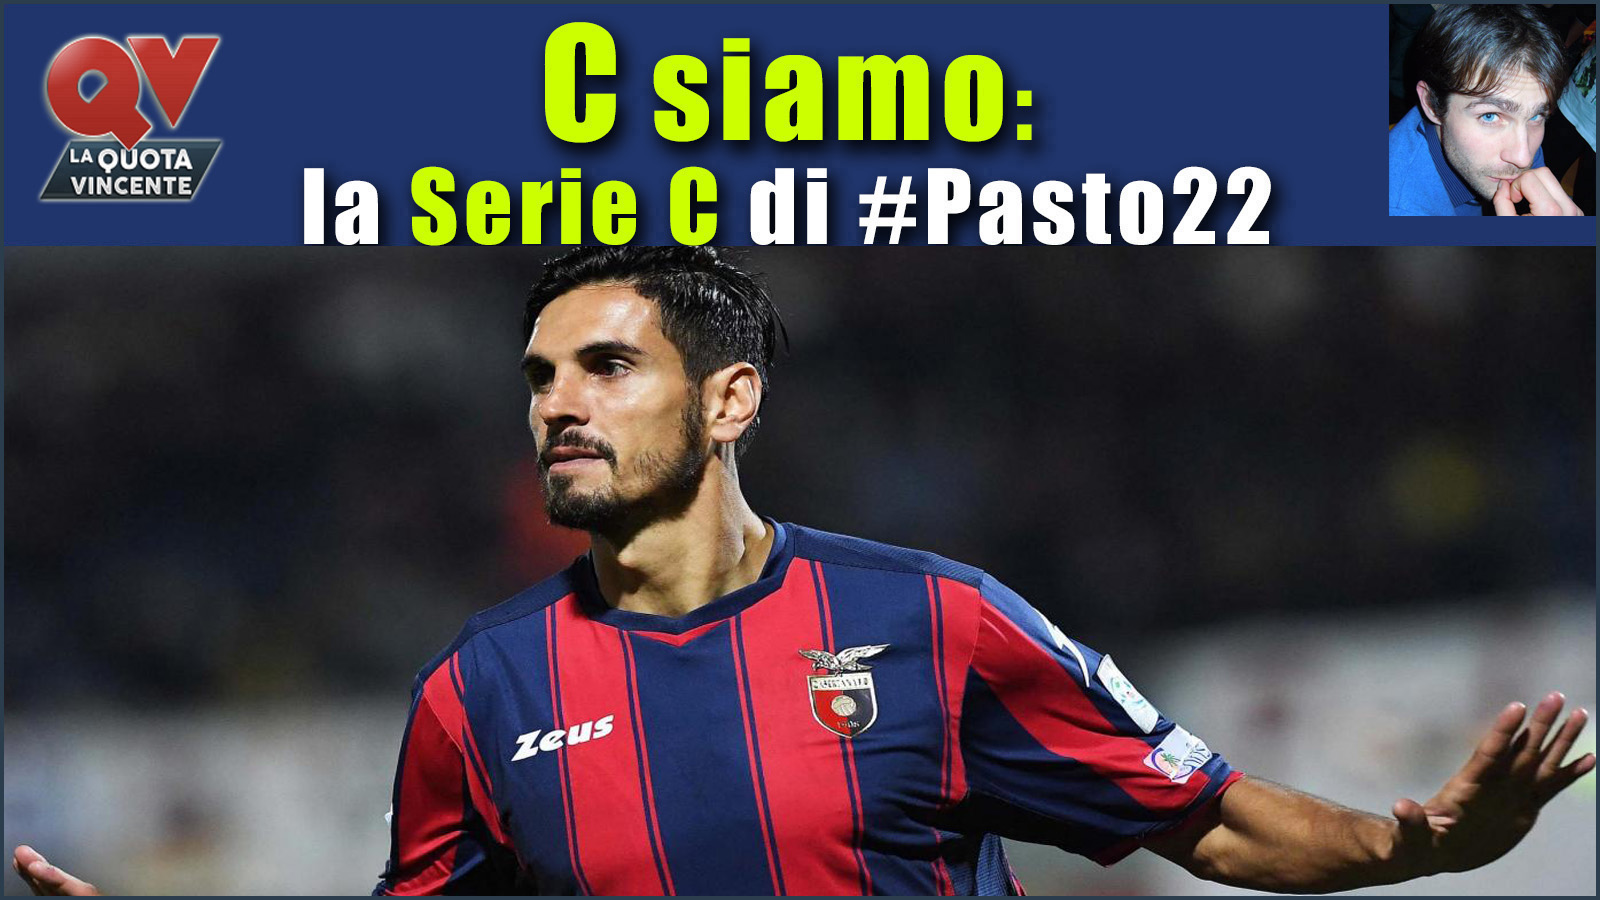 Pronostici Serie C sabato 18 novembre: #Csiamo, il blog di #Pasto22